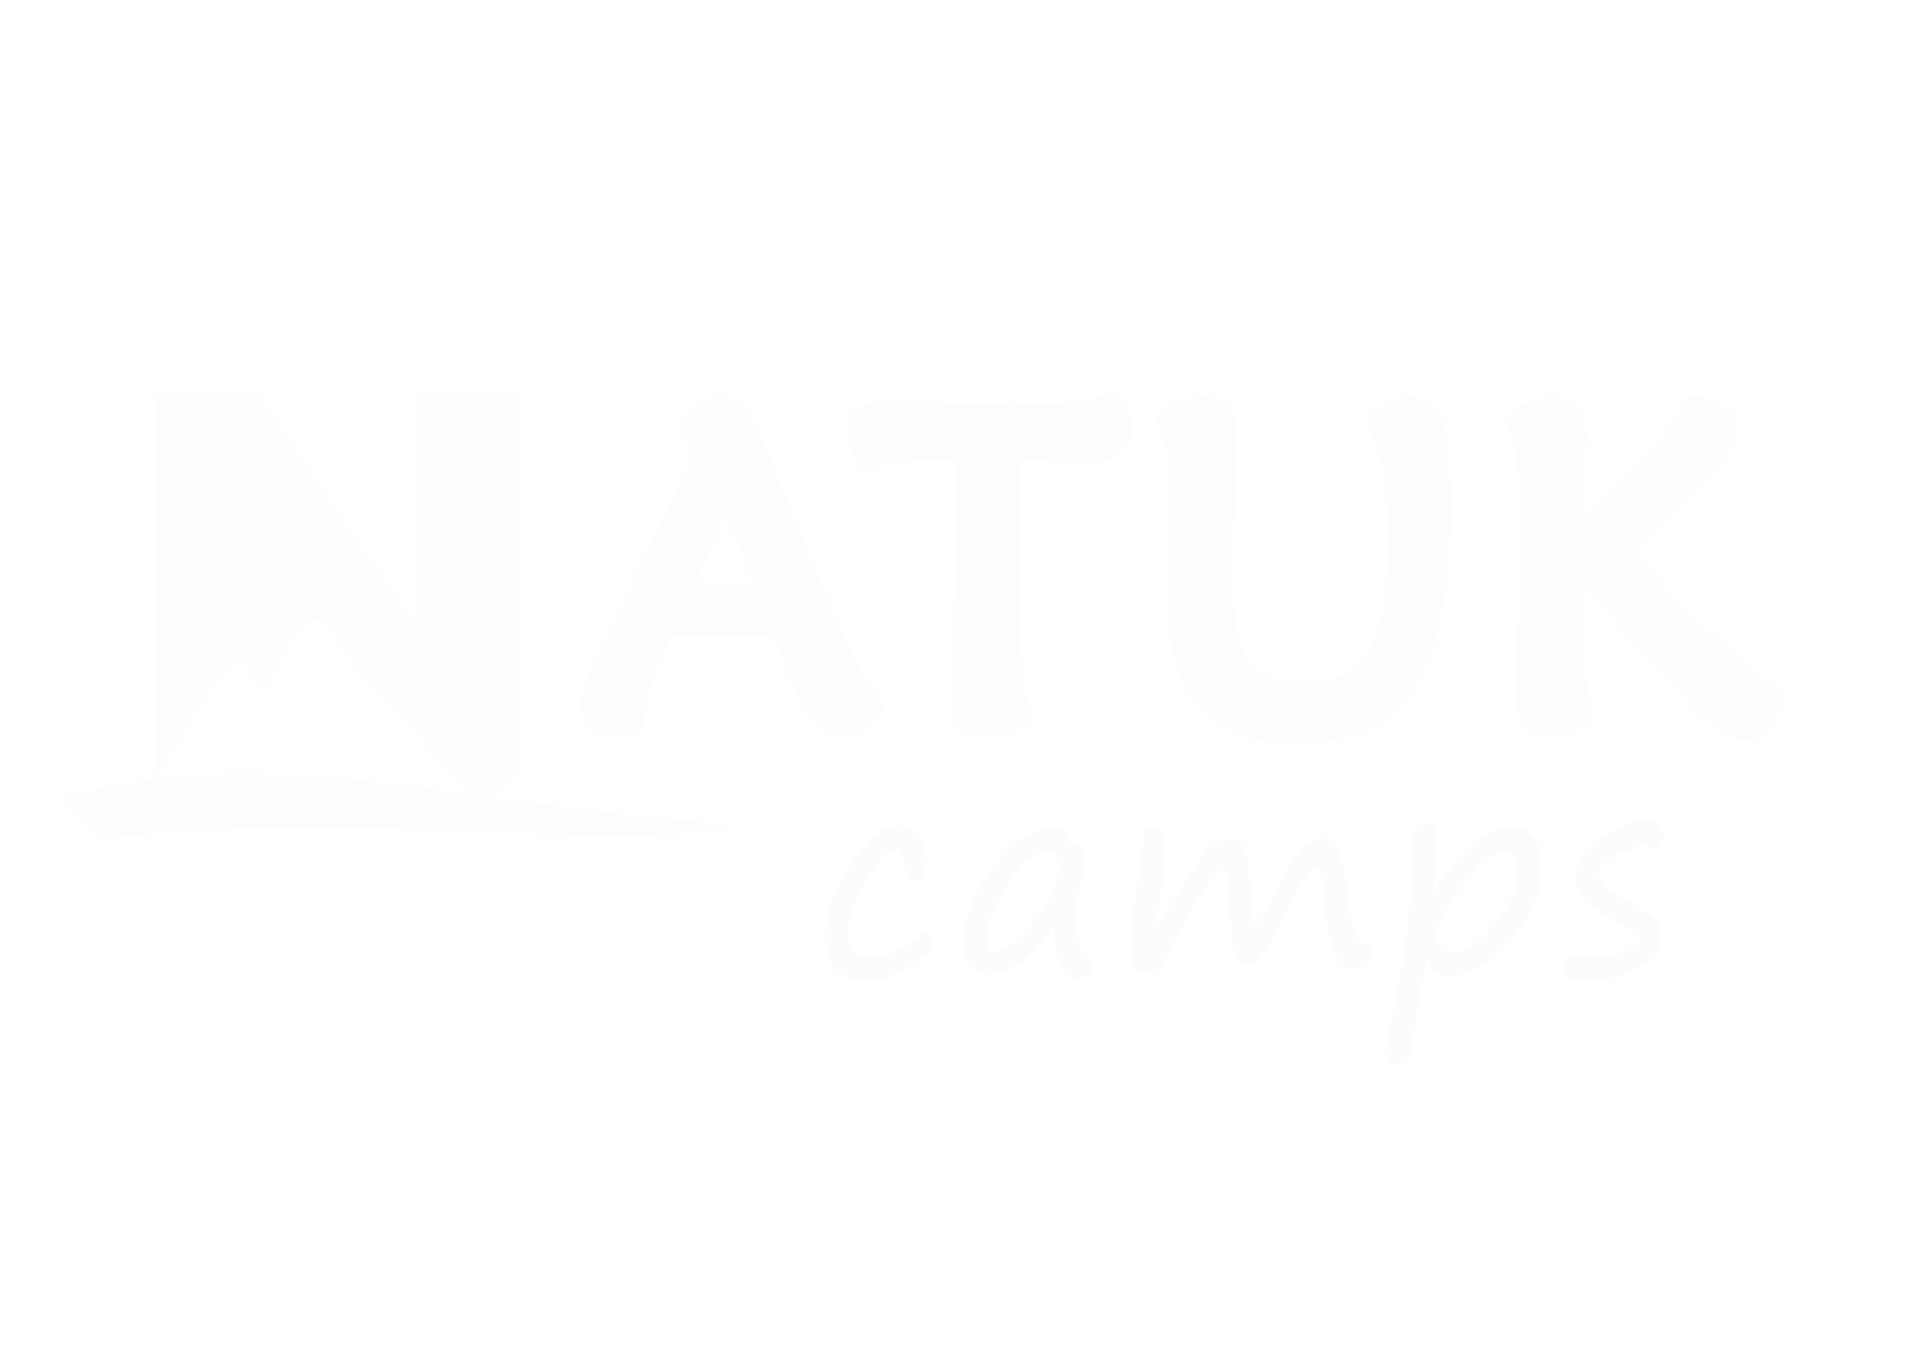 Natuk camps